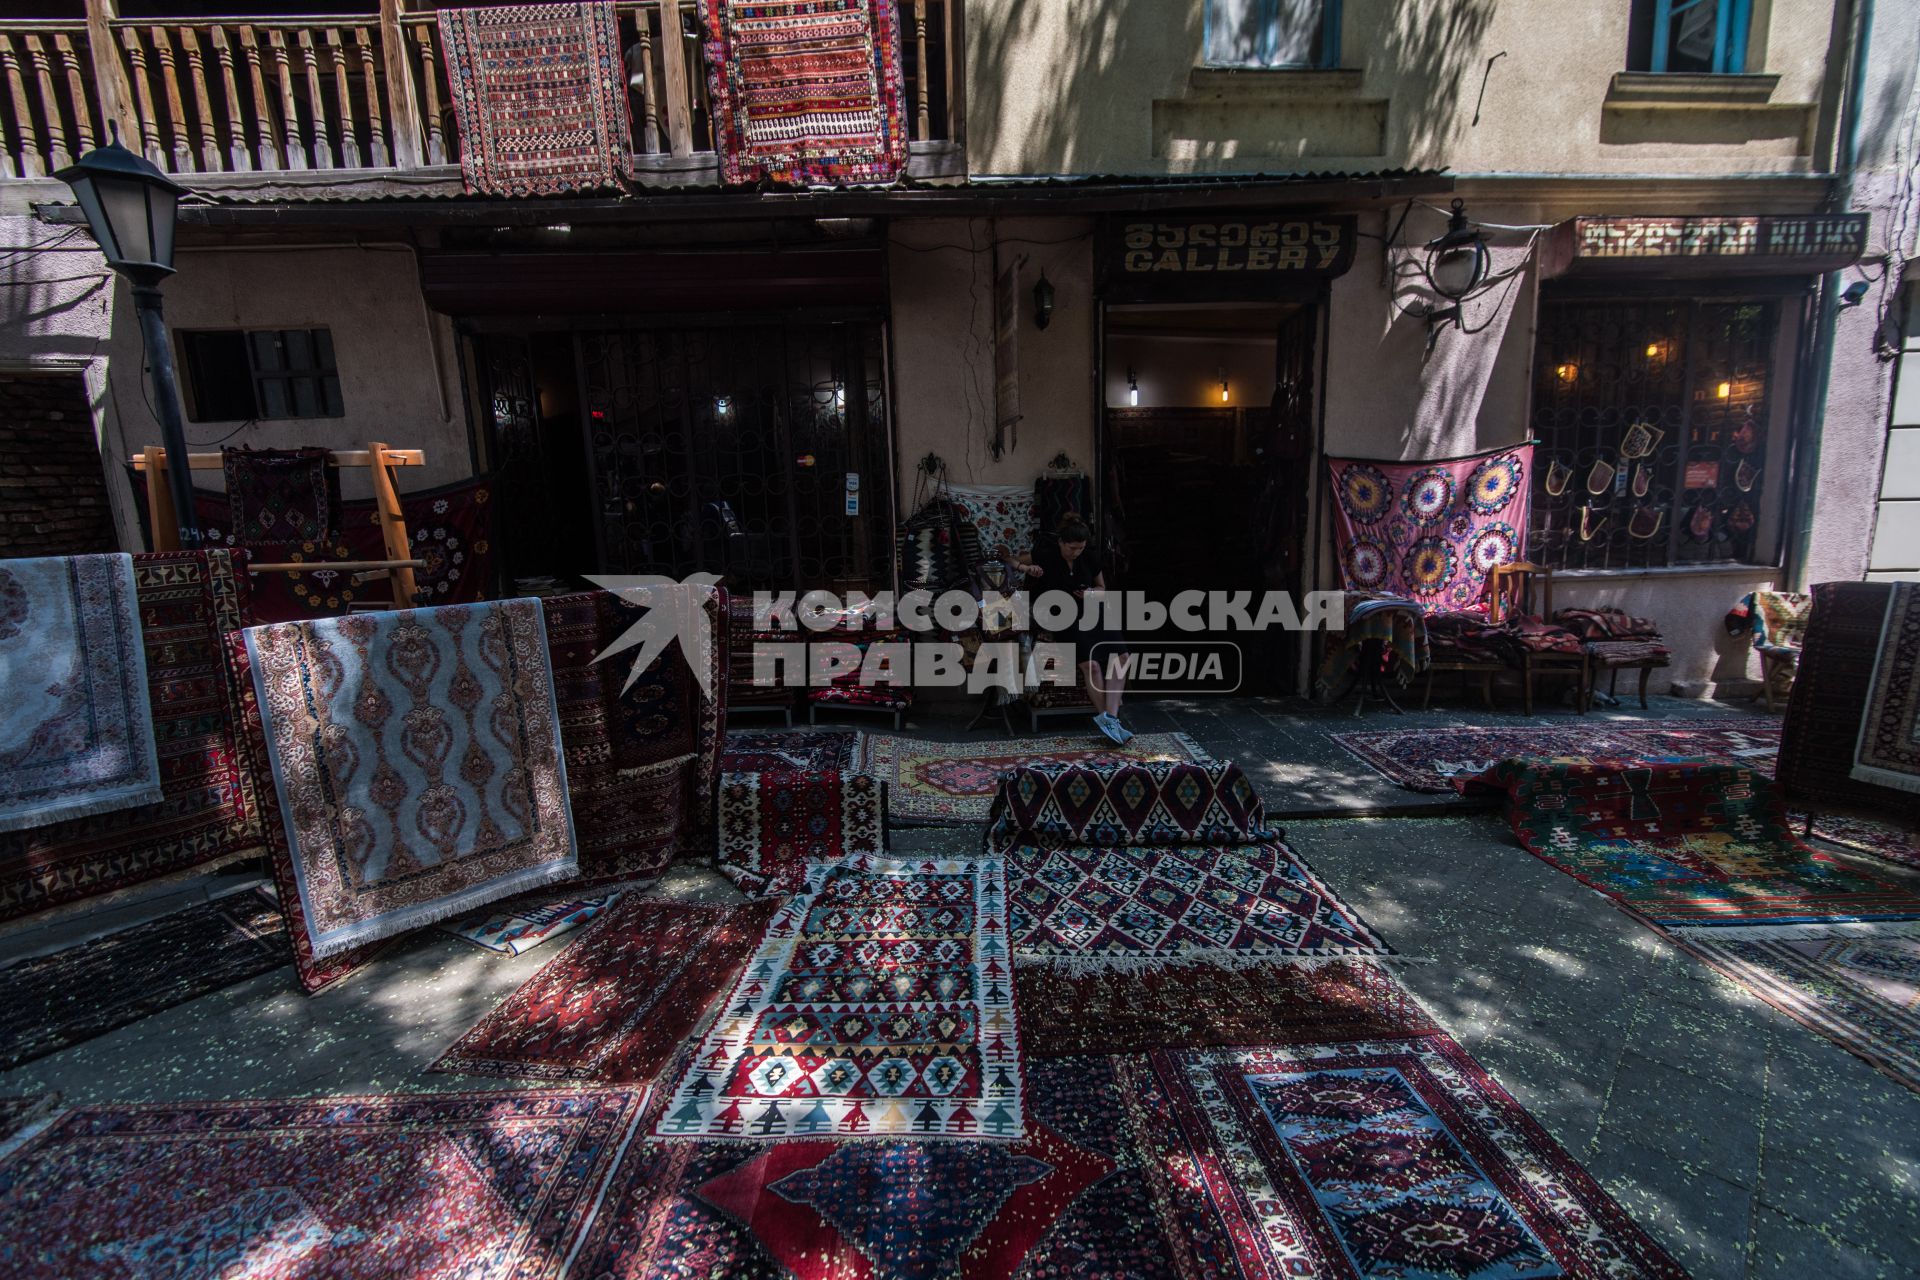 Грузия. Тбилиси. Продажа ковров.